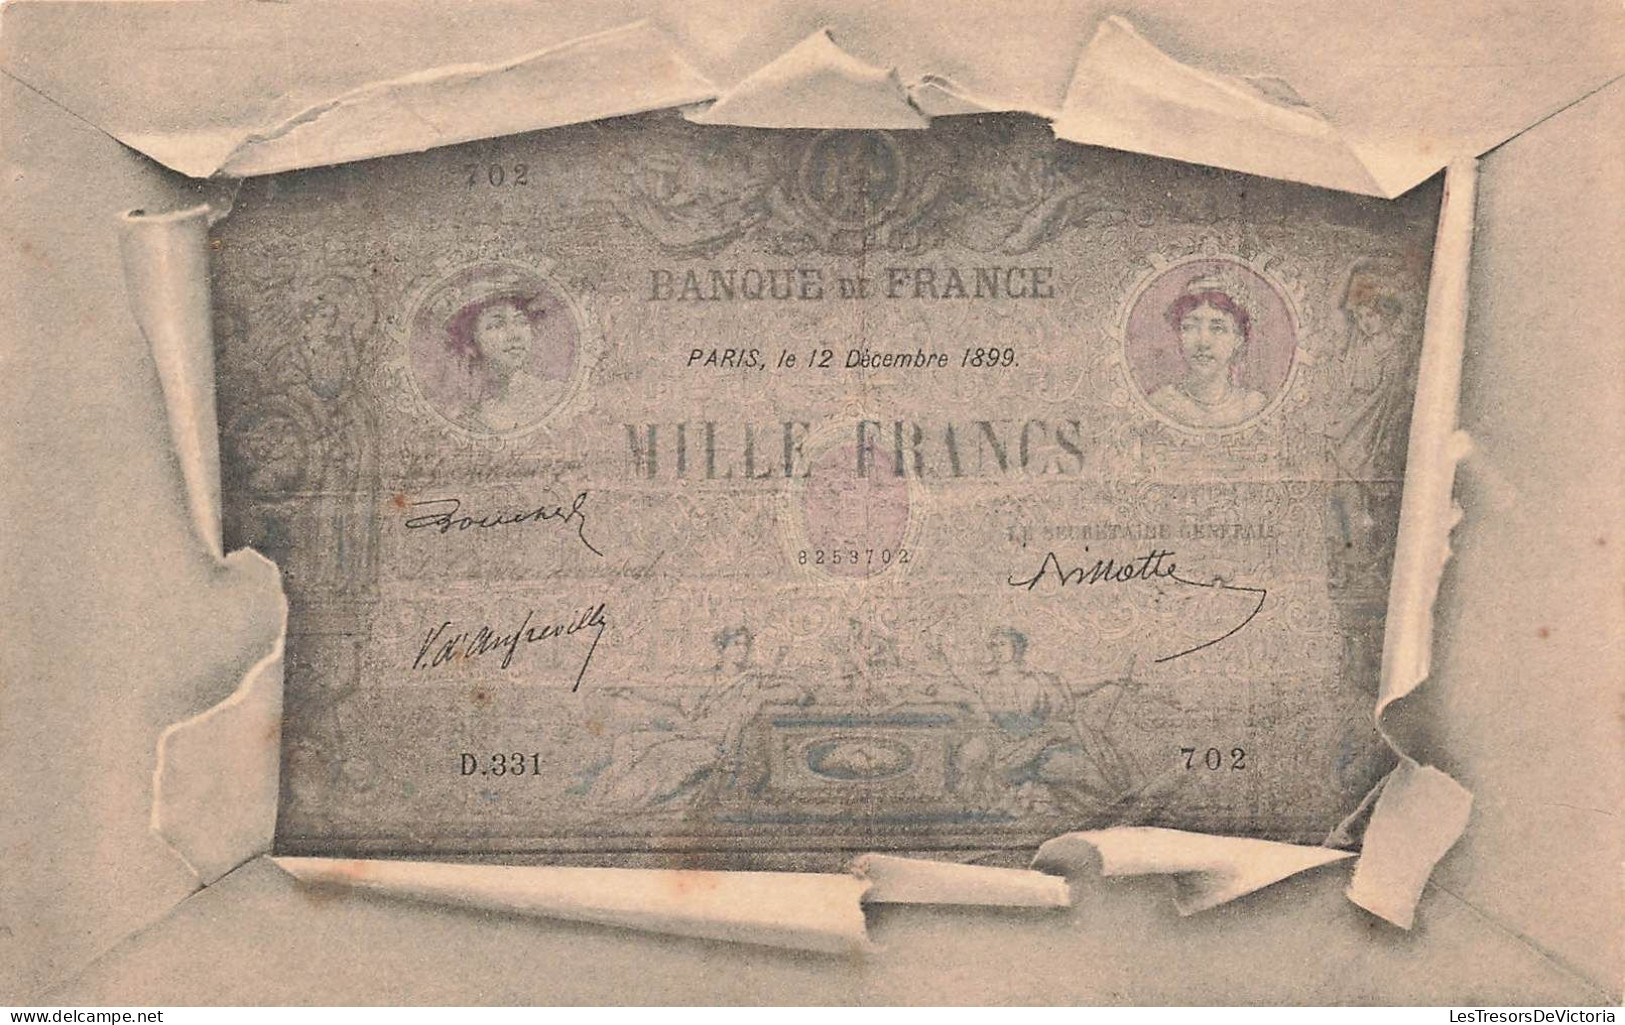 MONNAIES (représentations) - Mille Francs - Banque De France - Paris Le 12 Décembre 1899 - Carte Postale Ancienne - Münzen (Abb.)